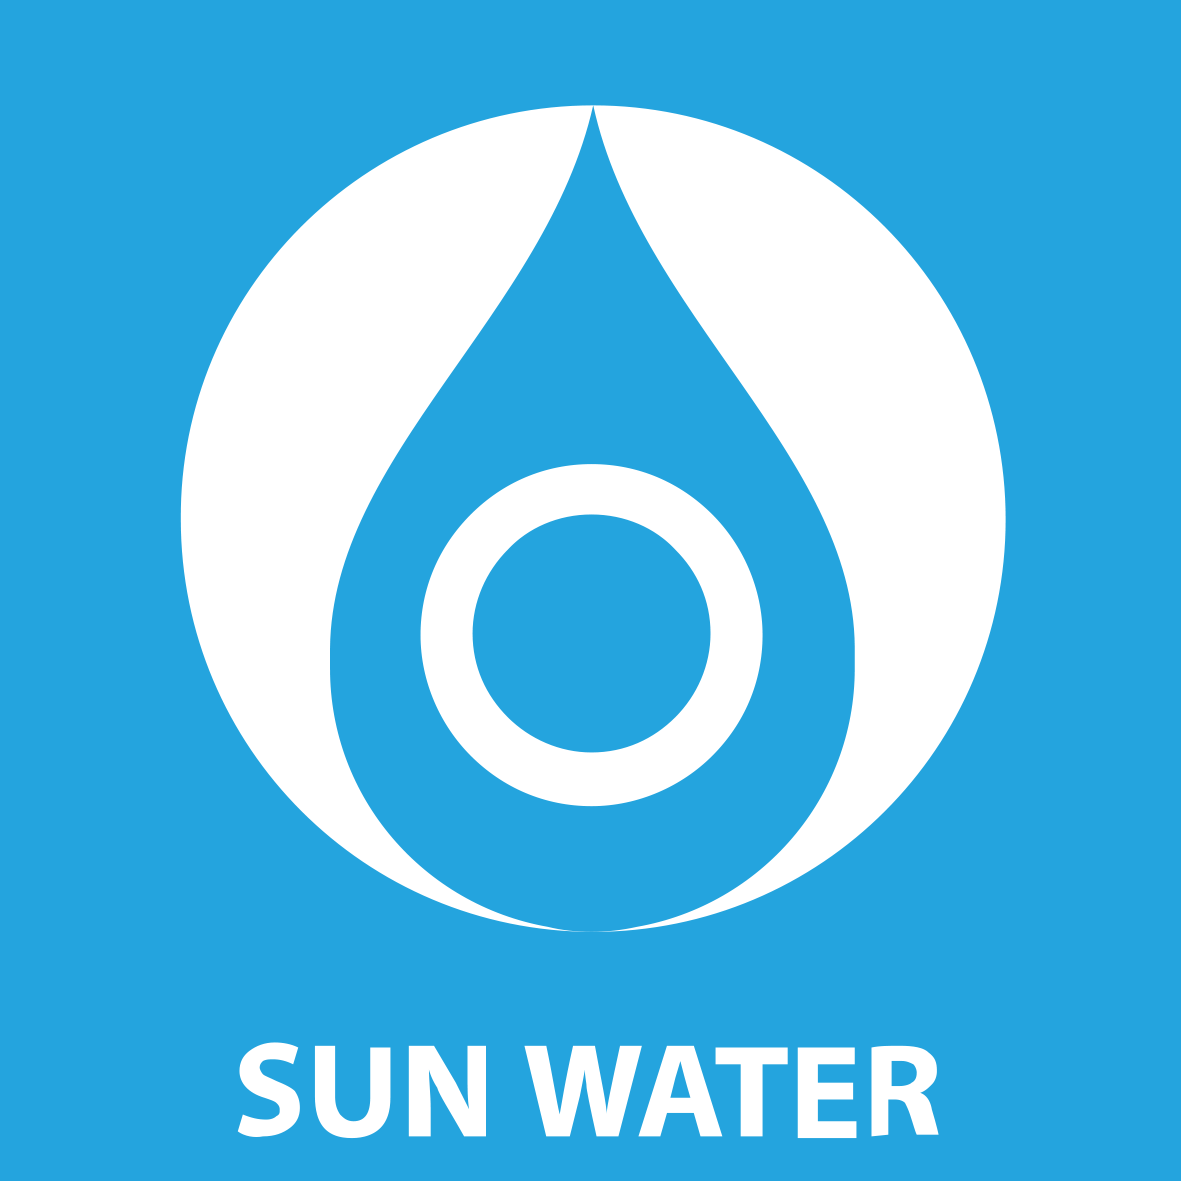 Sun water